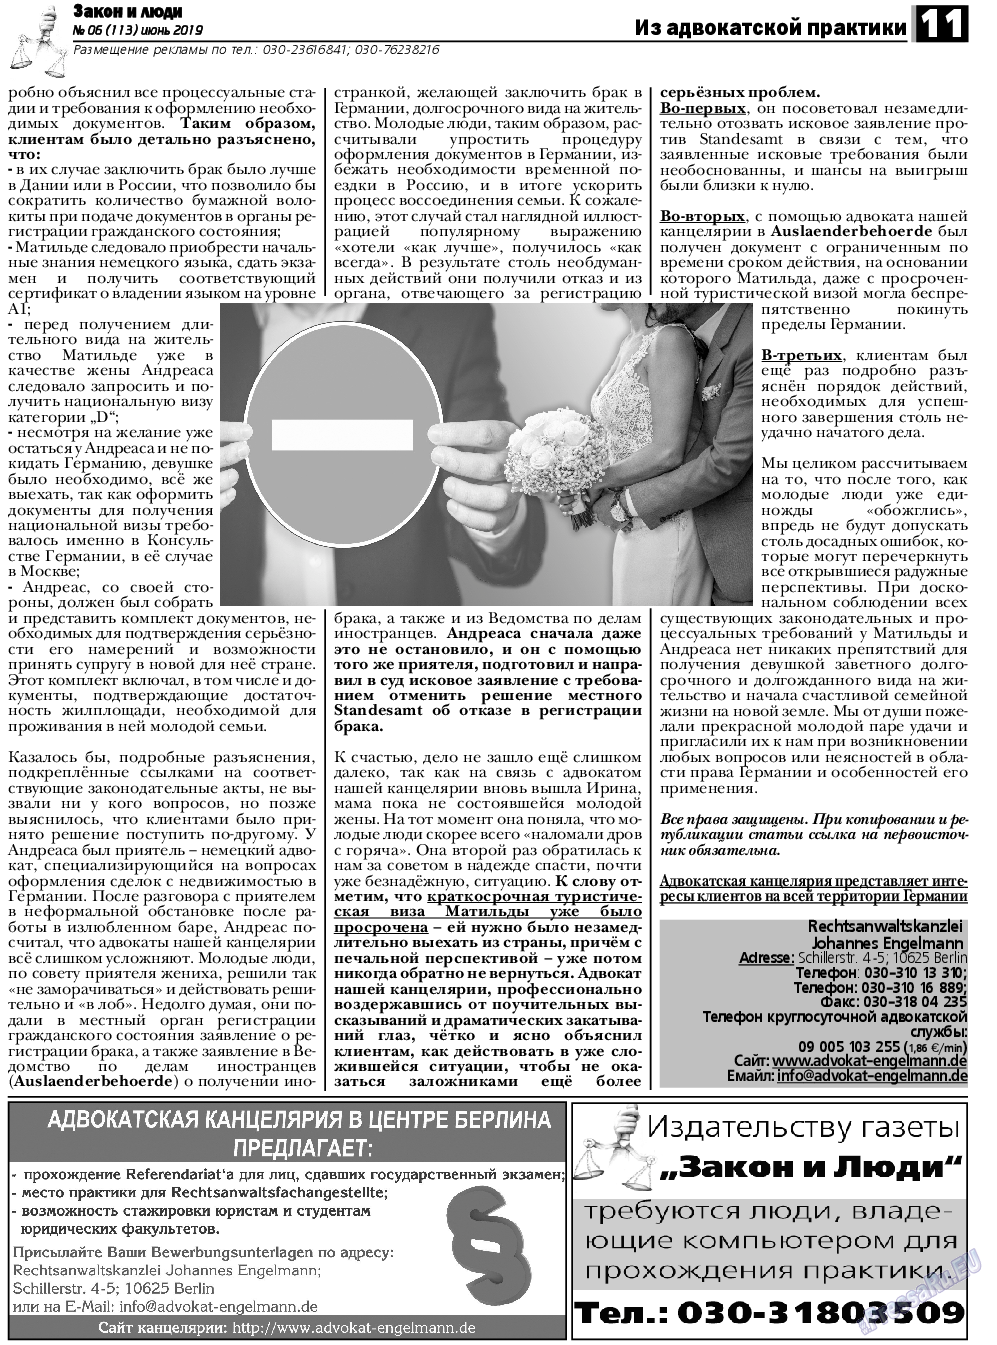 Закон и люди, газета. 2019 №6 стр.11